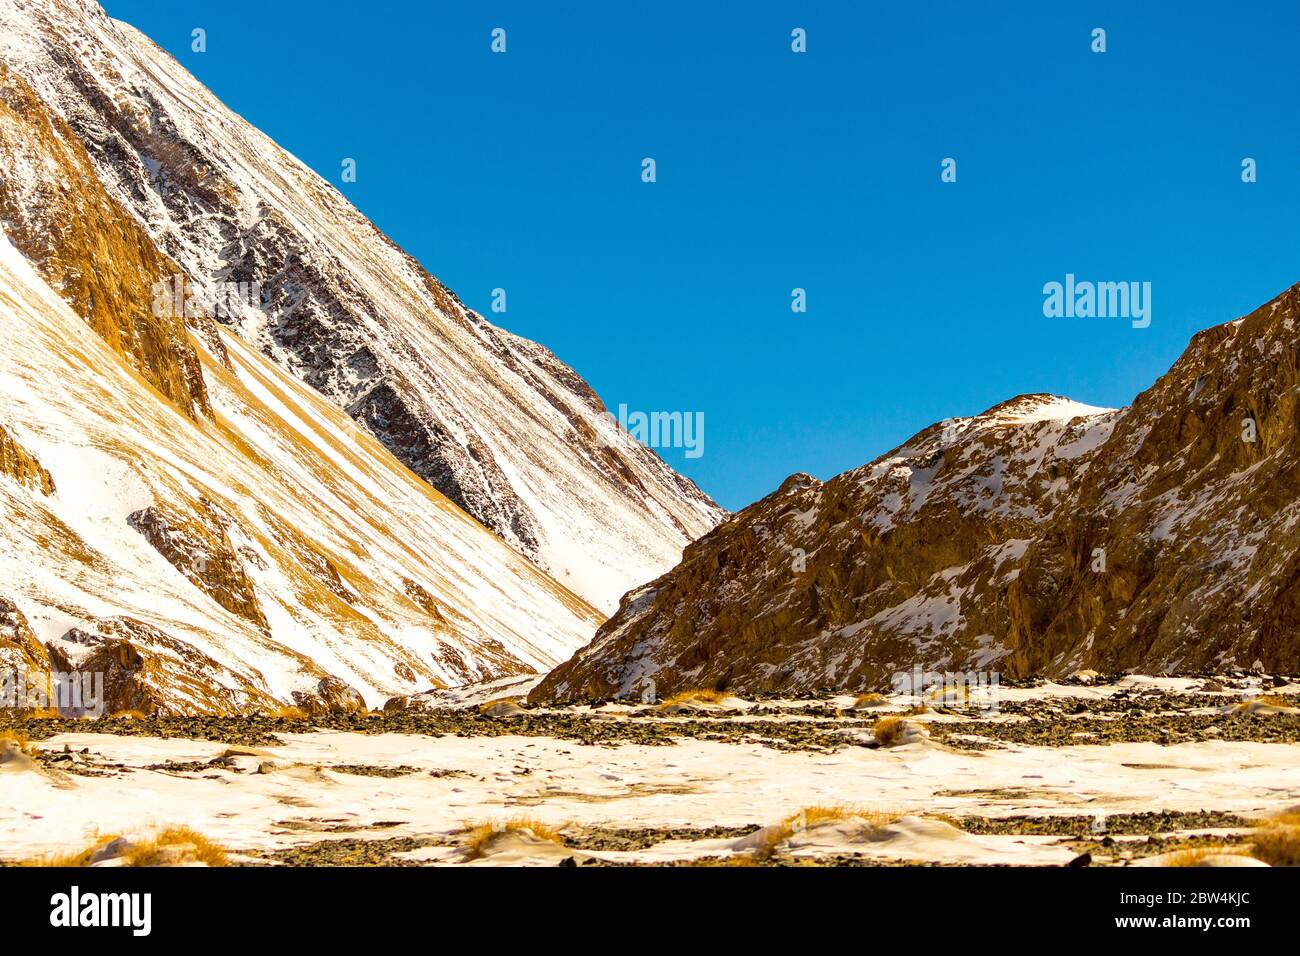 Berge von Ladakh, Indien - Panorama-Blick auf den Himalaya. Natürliche Schönheit von Ladakh in Indien. Schneeberge von Ladakh. Berühmter Touristenort. Stockfoto